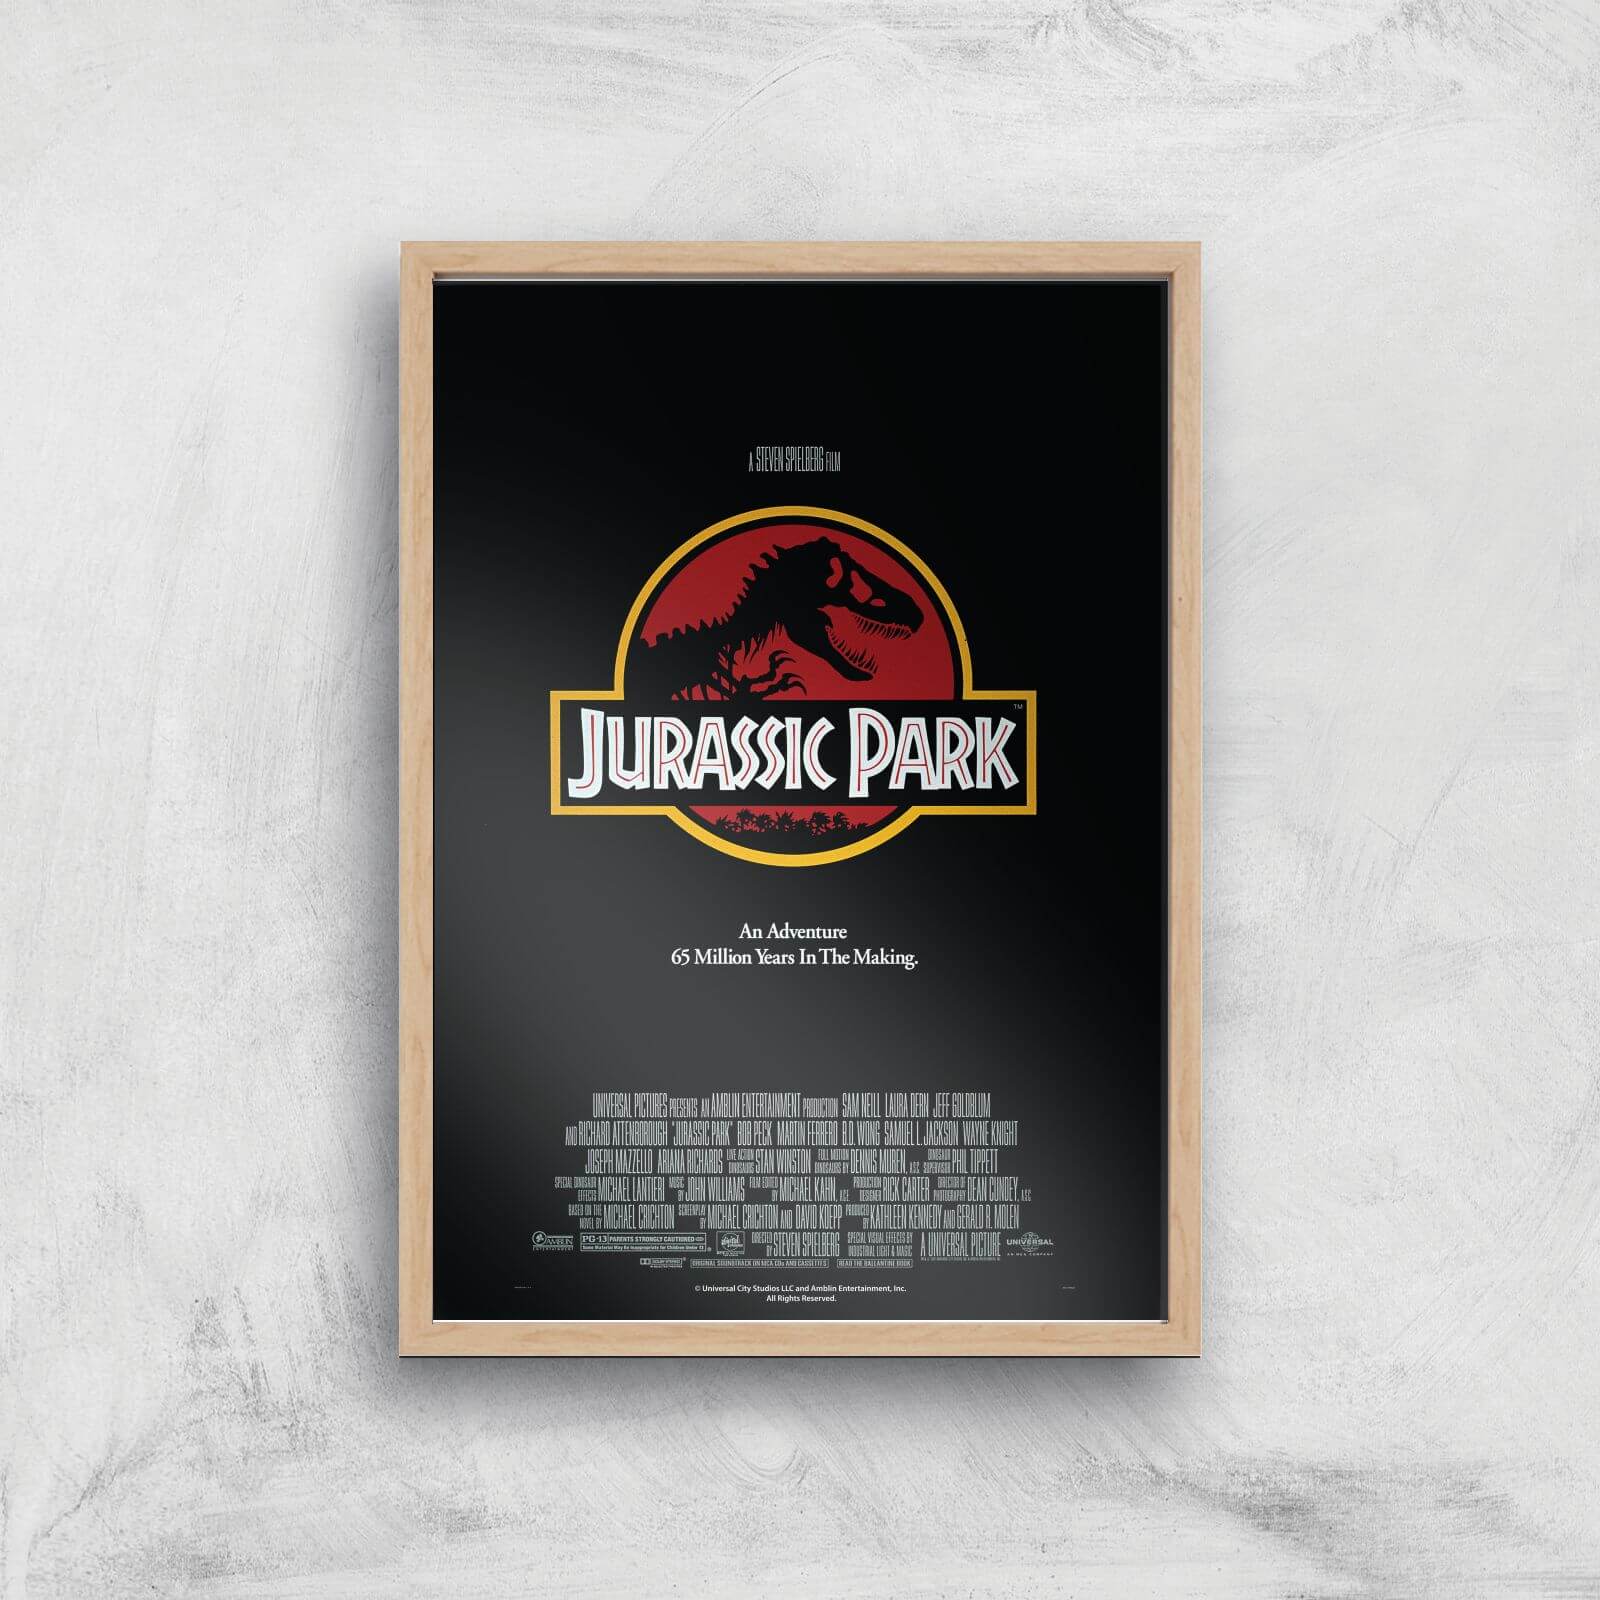 Jurassic Park Giclee Art Print - A4 - Wooden Frame